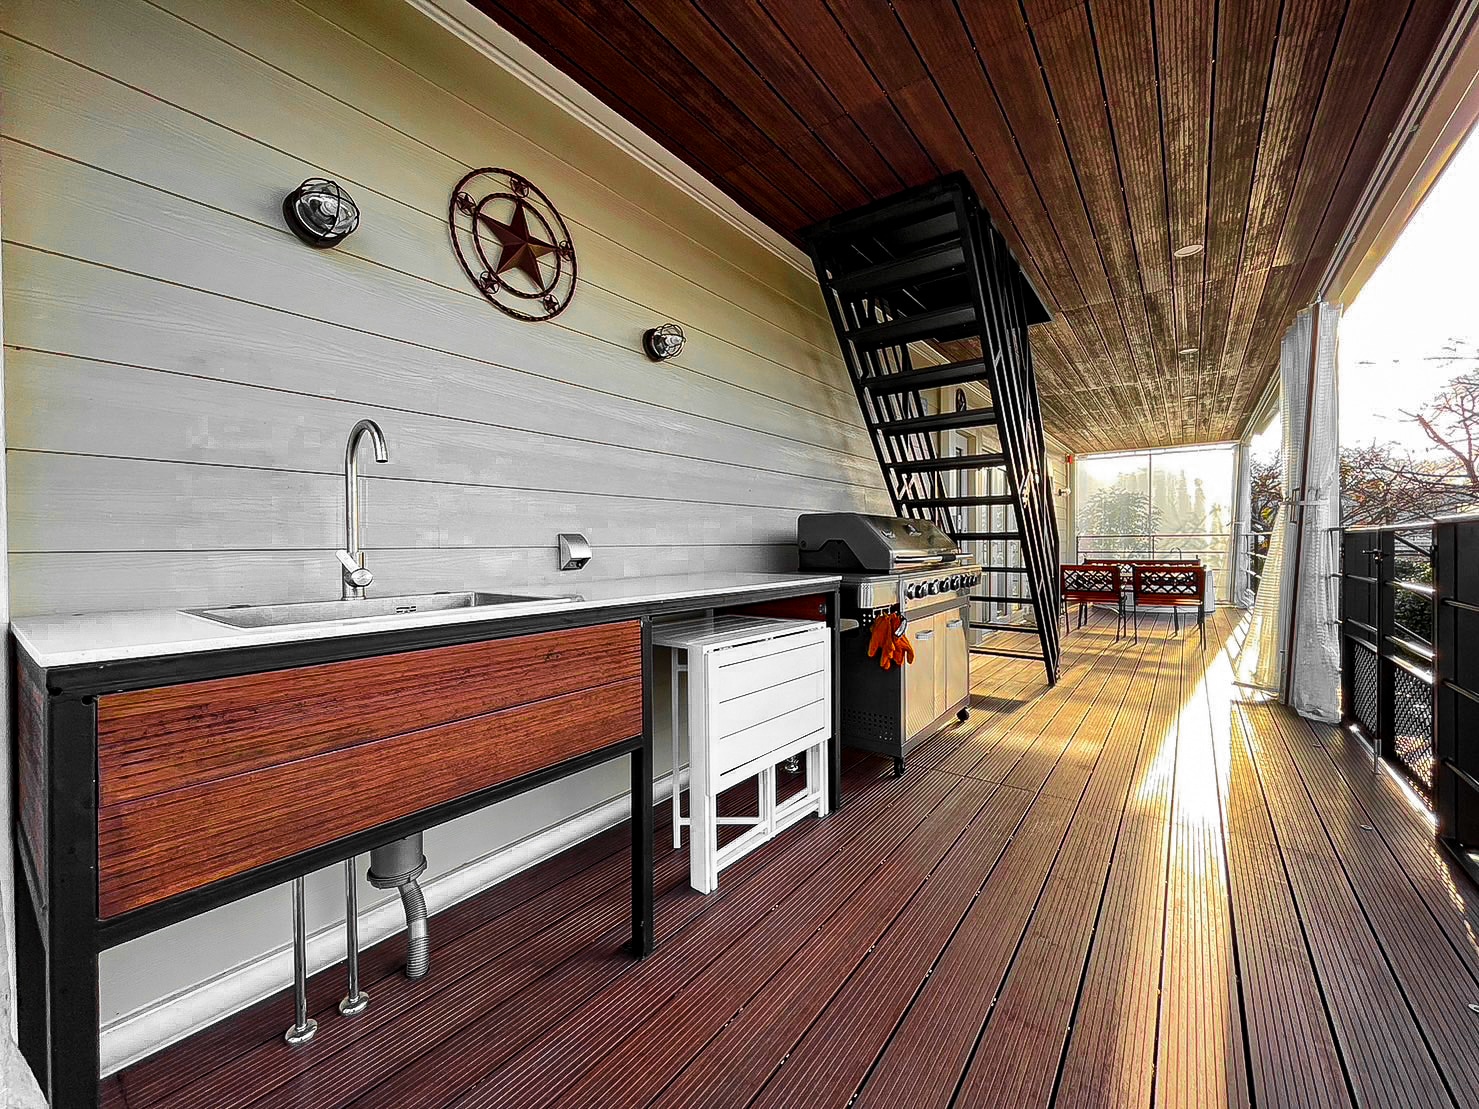 SUITE VILLA Outdoor wooden deck (water area, BBQ stove, etc.)